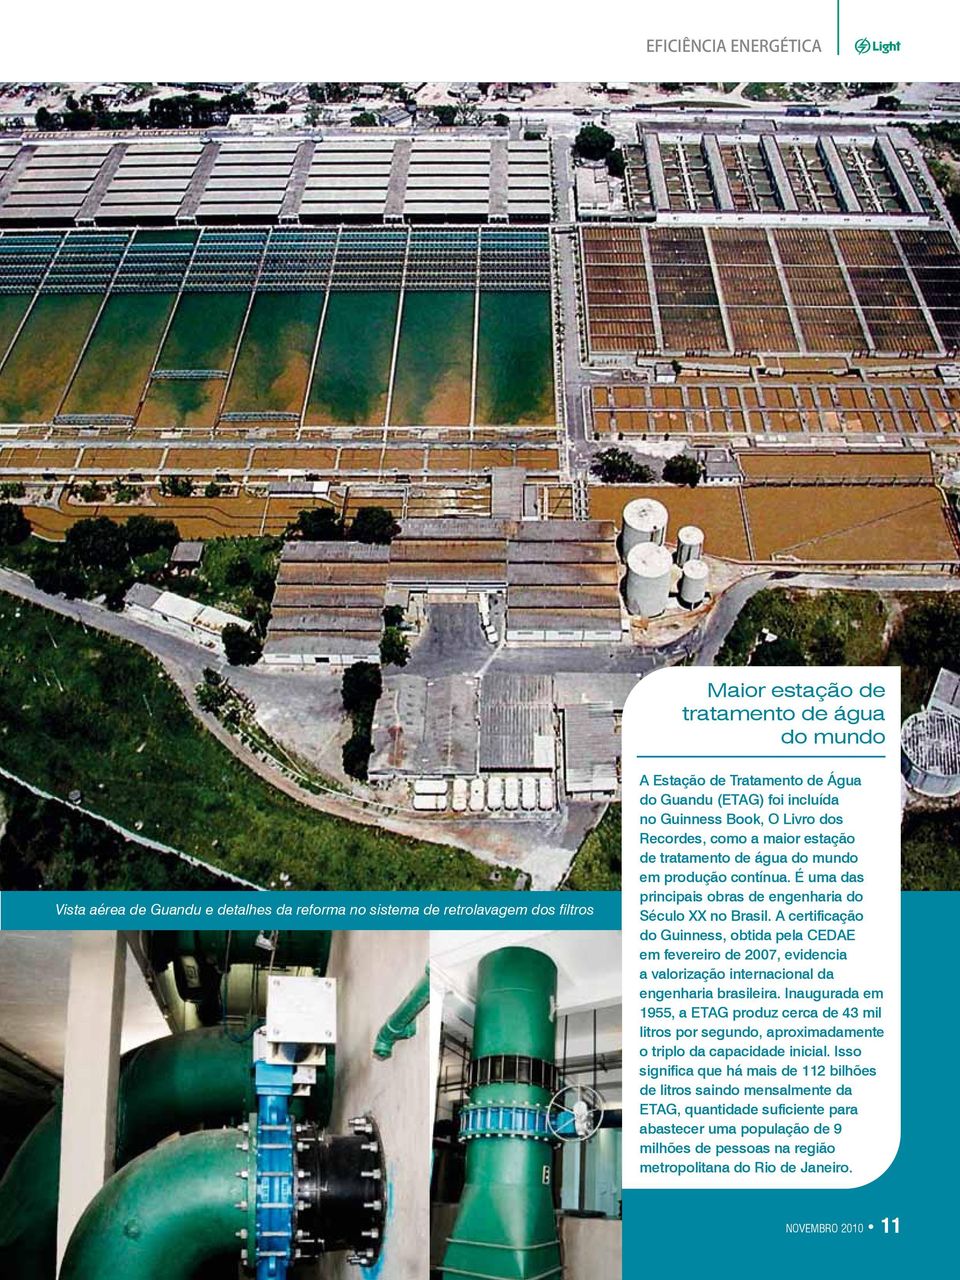 A certificação do Guinness, obtida pela CEDAE em fevereiro de 2007, evidencia a valorização internacional da engenharia brasileira.